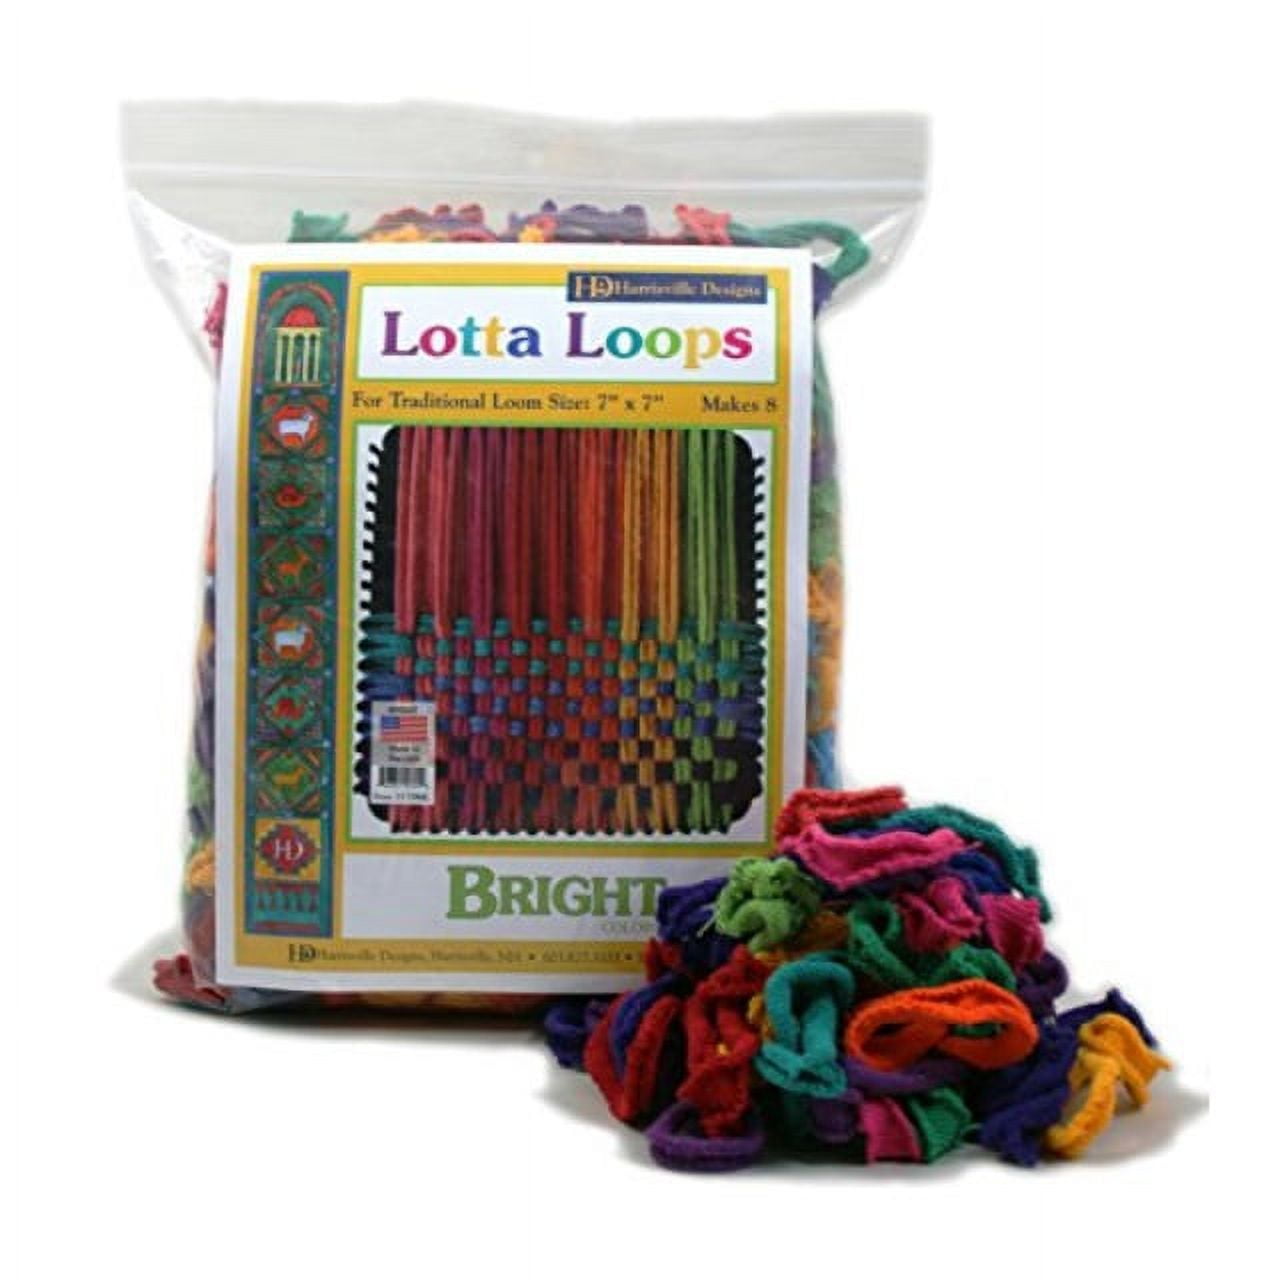 Harrisville Potholder Loom Kit - Cotton Loops (makes 2)